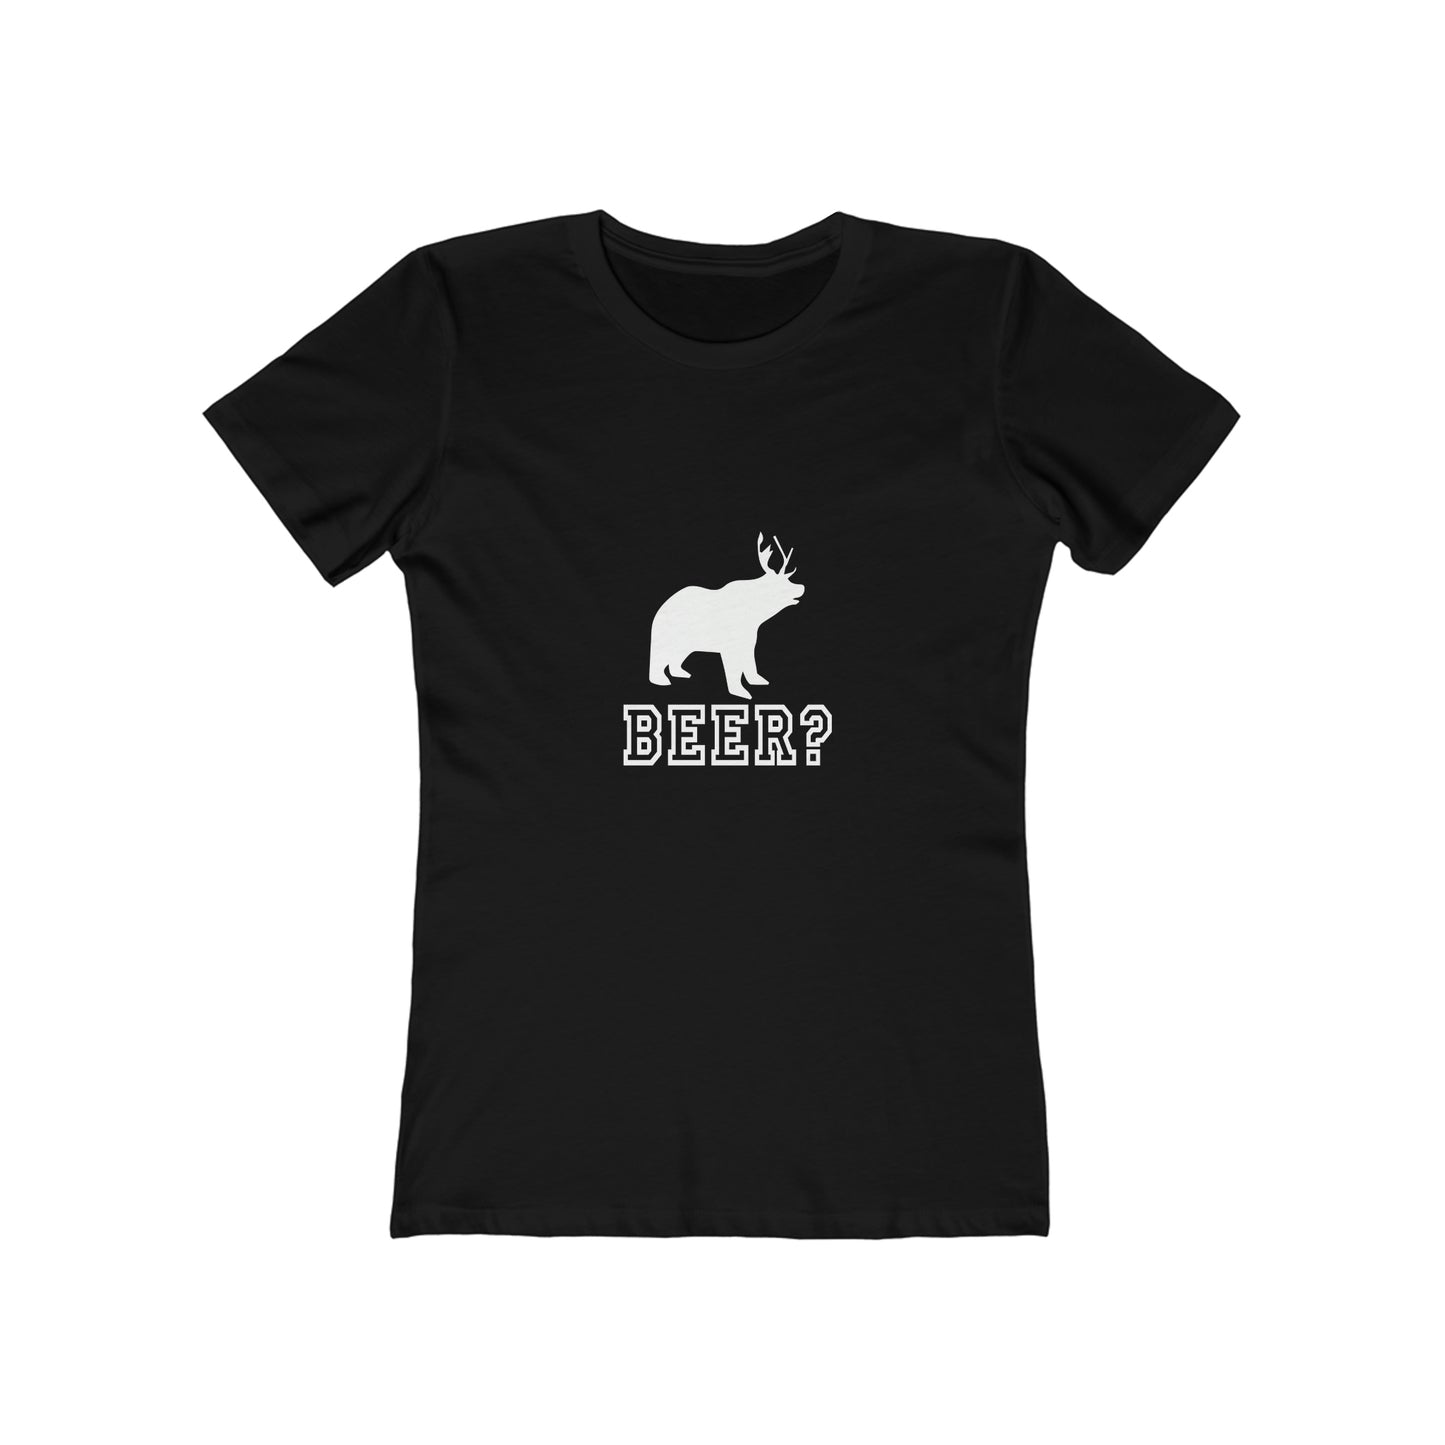 Beer? - Women's T-shirt